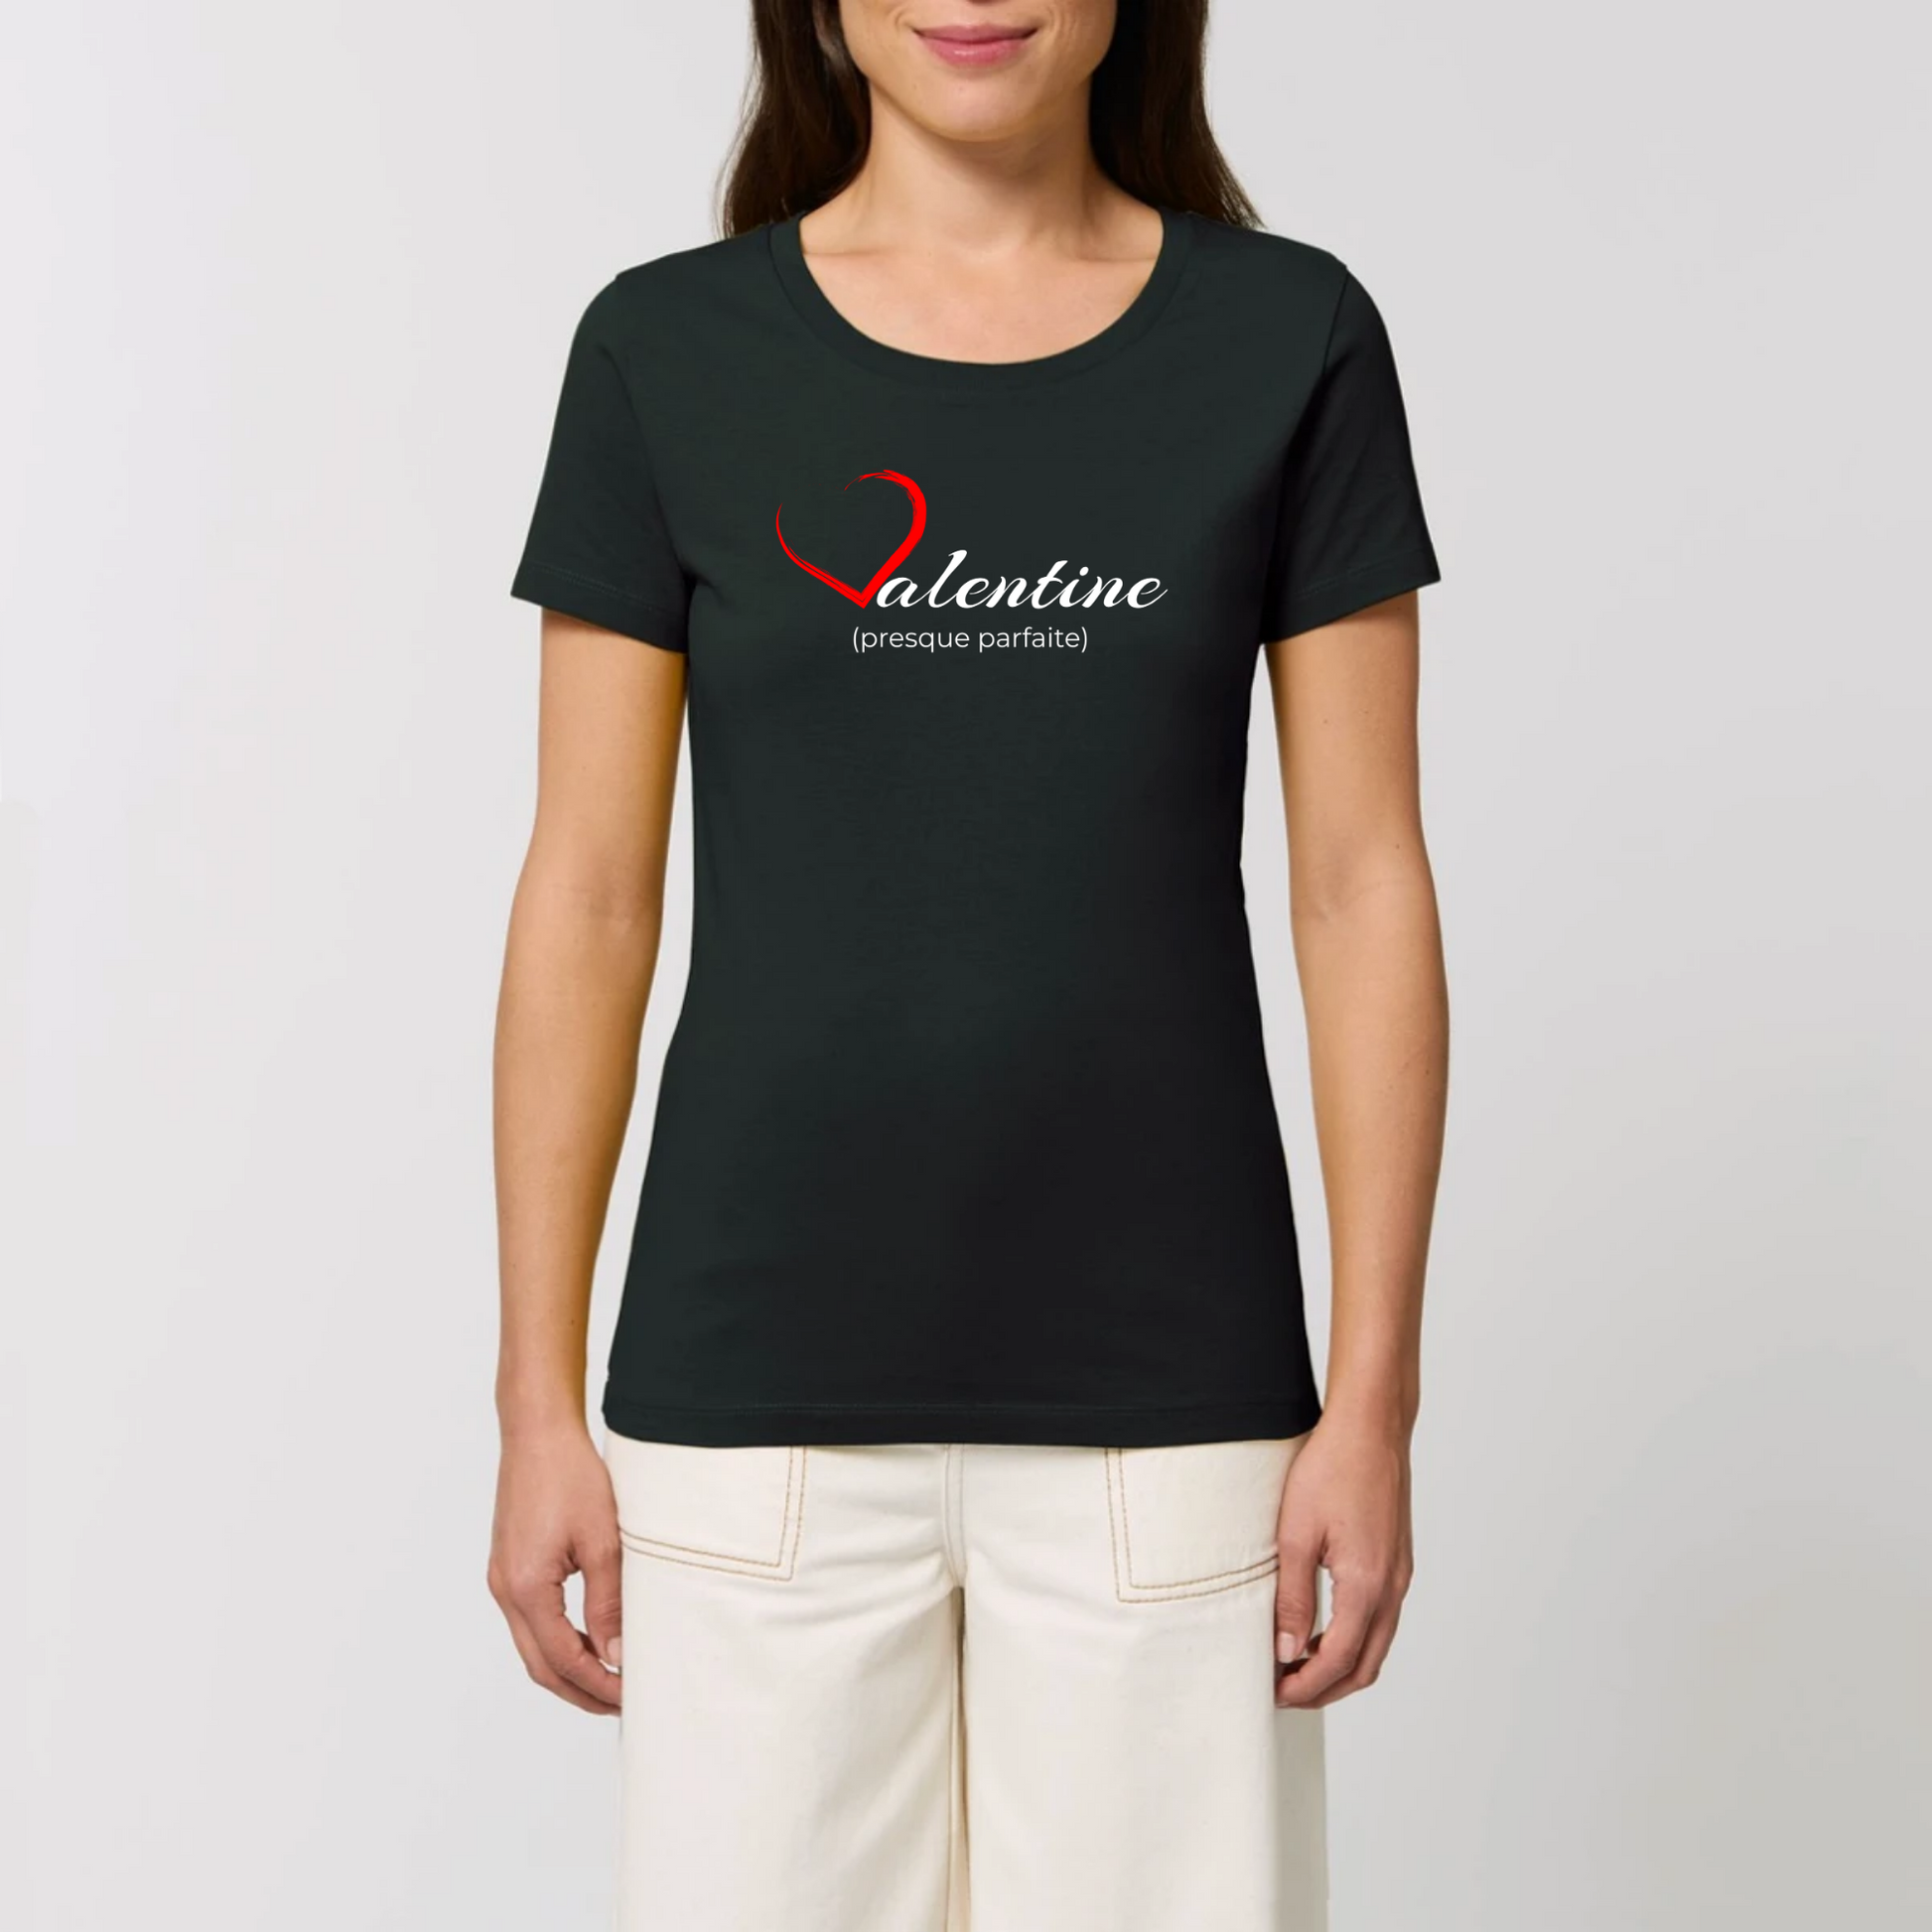 t-shirt femme Valentine coton bio T-French, saint valentin, idée cadeau, tee shirt femme, France, Noir